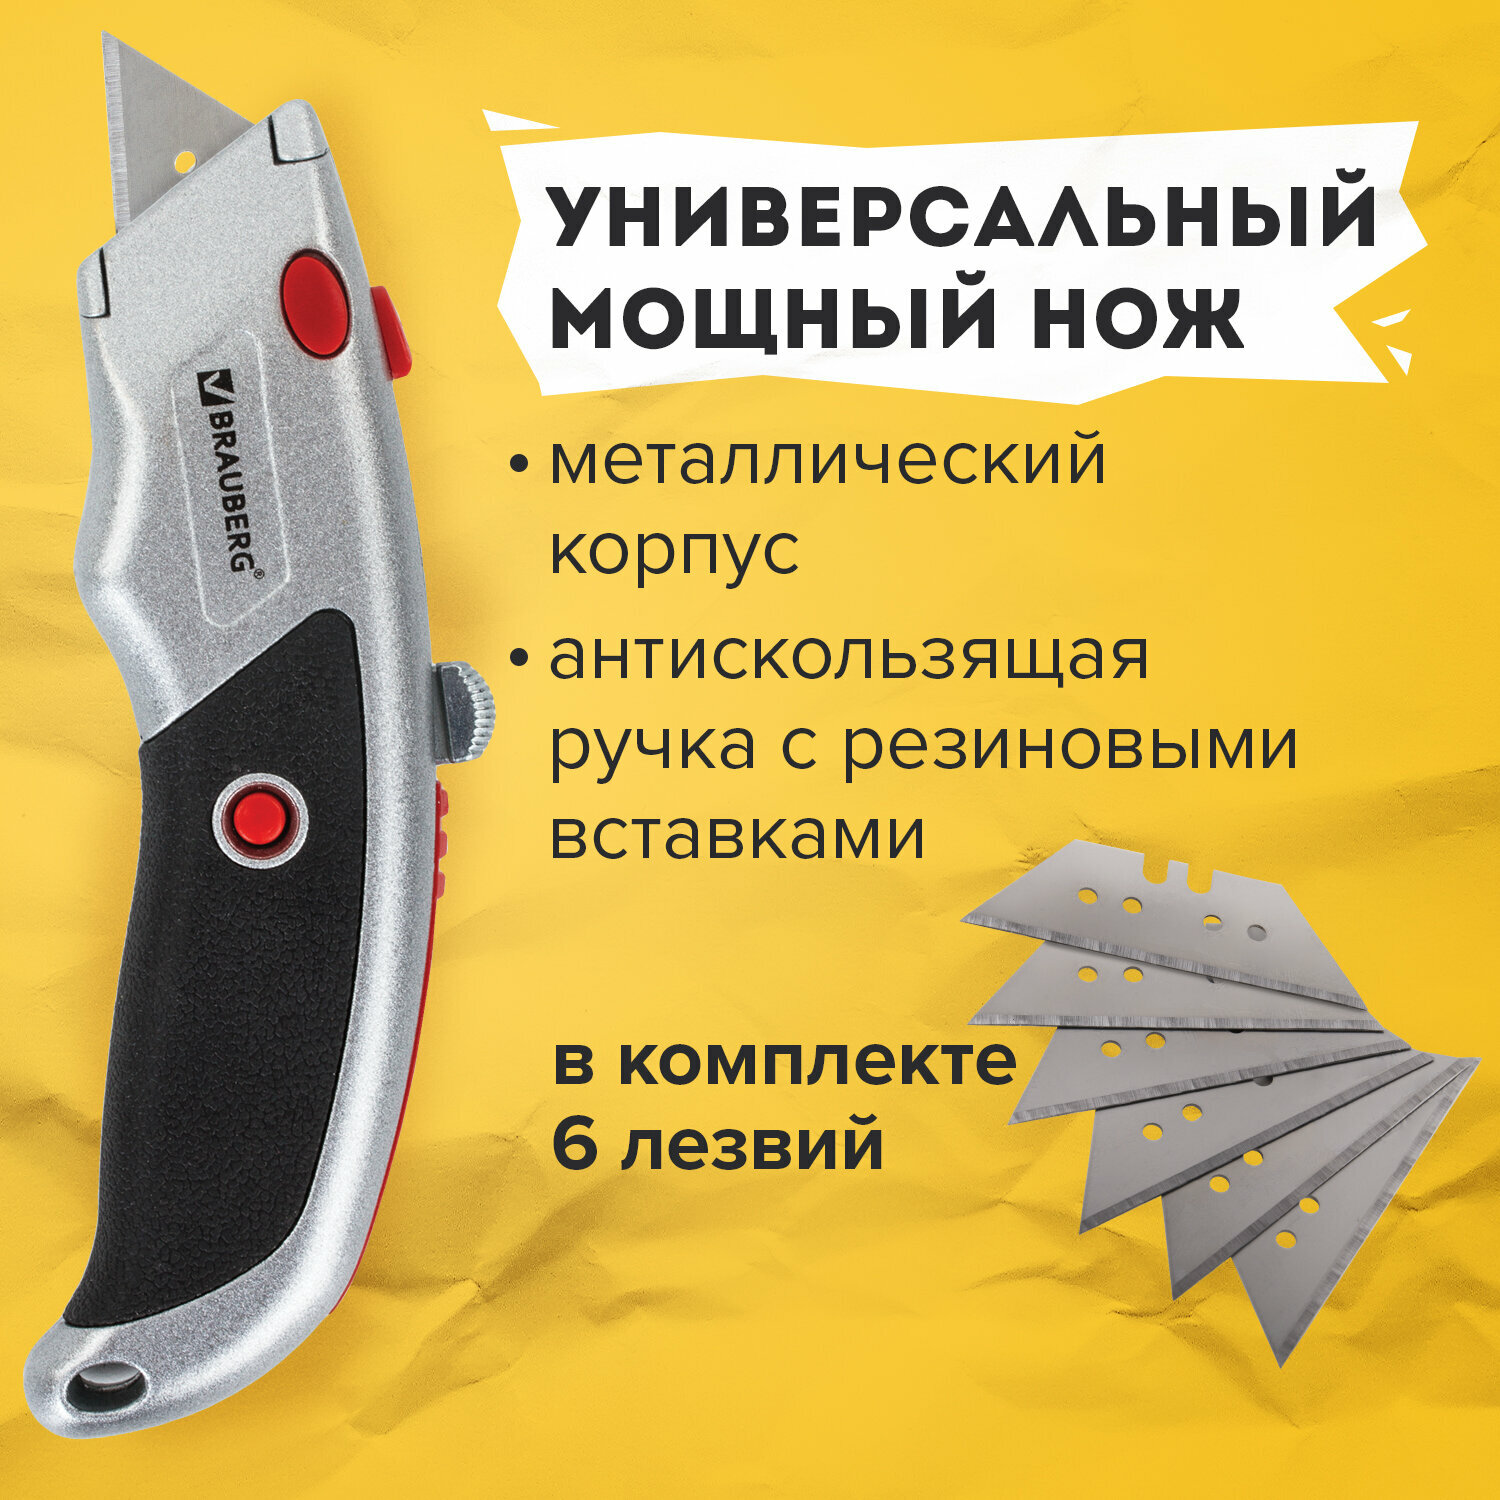 Нож универсальный мощный Brauberg Professional, 6 лезвий в комплекте, фиксатор, металл, 235404